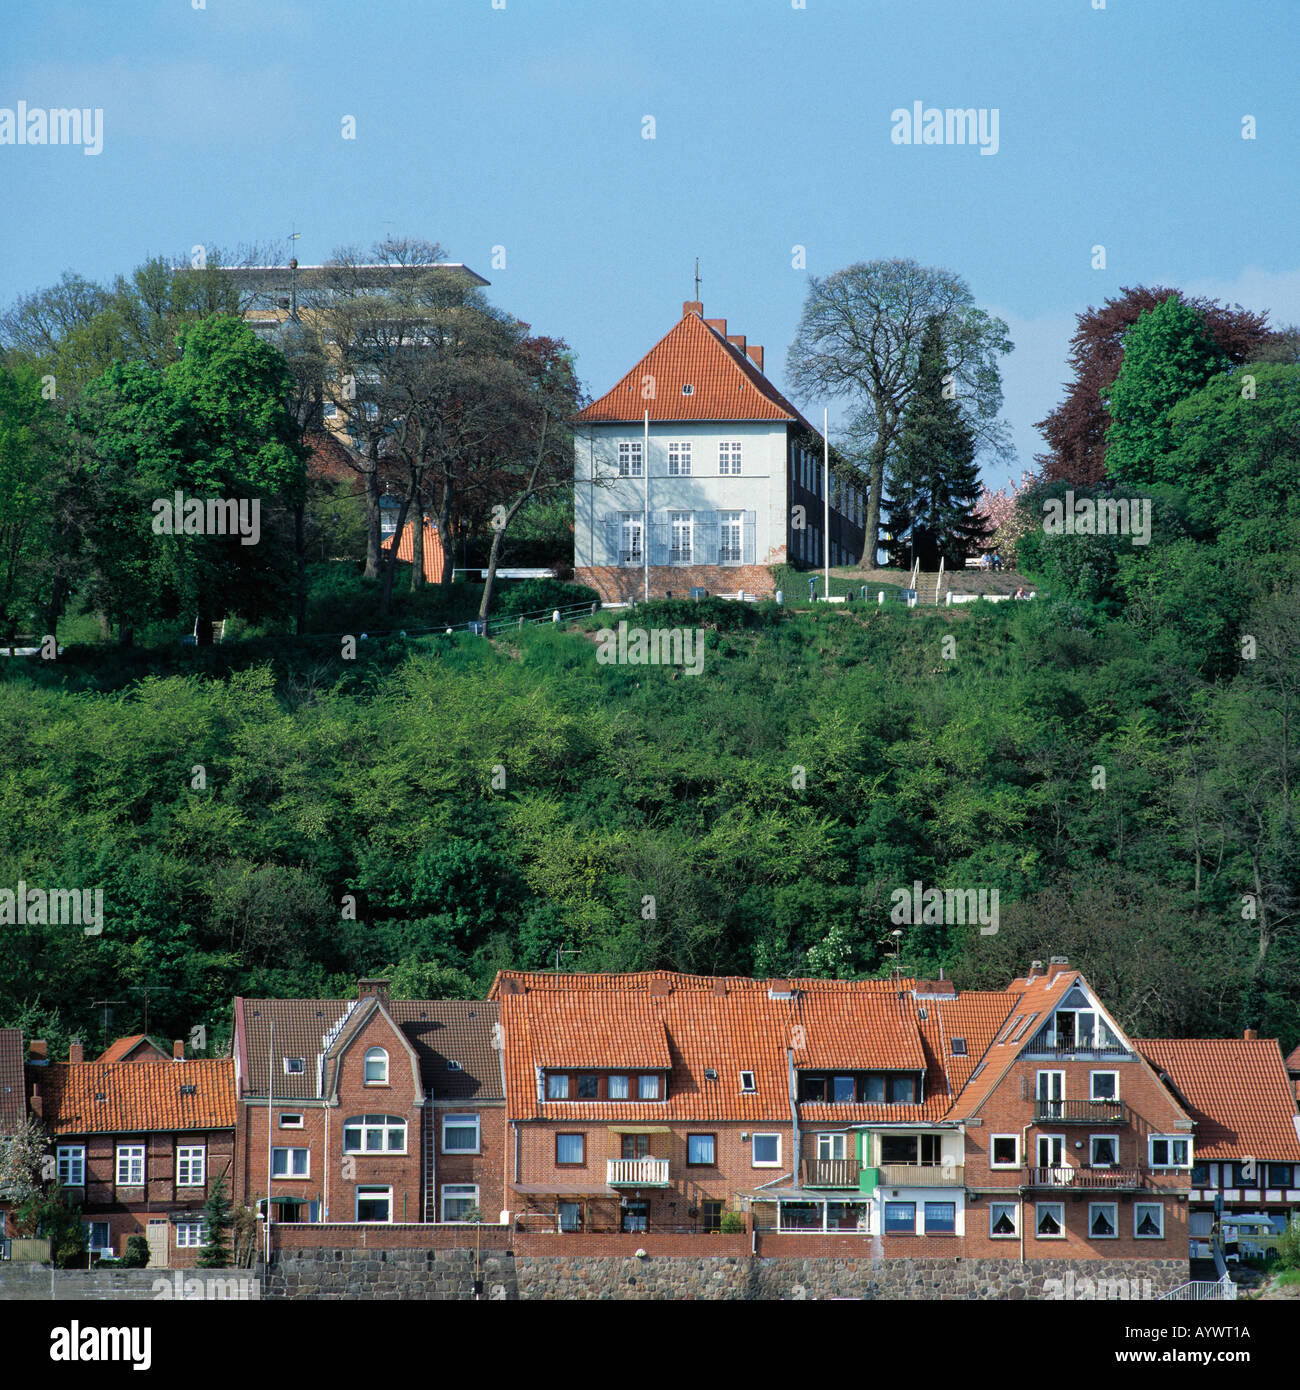 Von Lauenburg Uferpromenade Stadtpanorama mit der Elbe, Schloss un einem Steilufer, Schleswig-Holstein Foto de stock